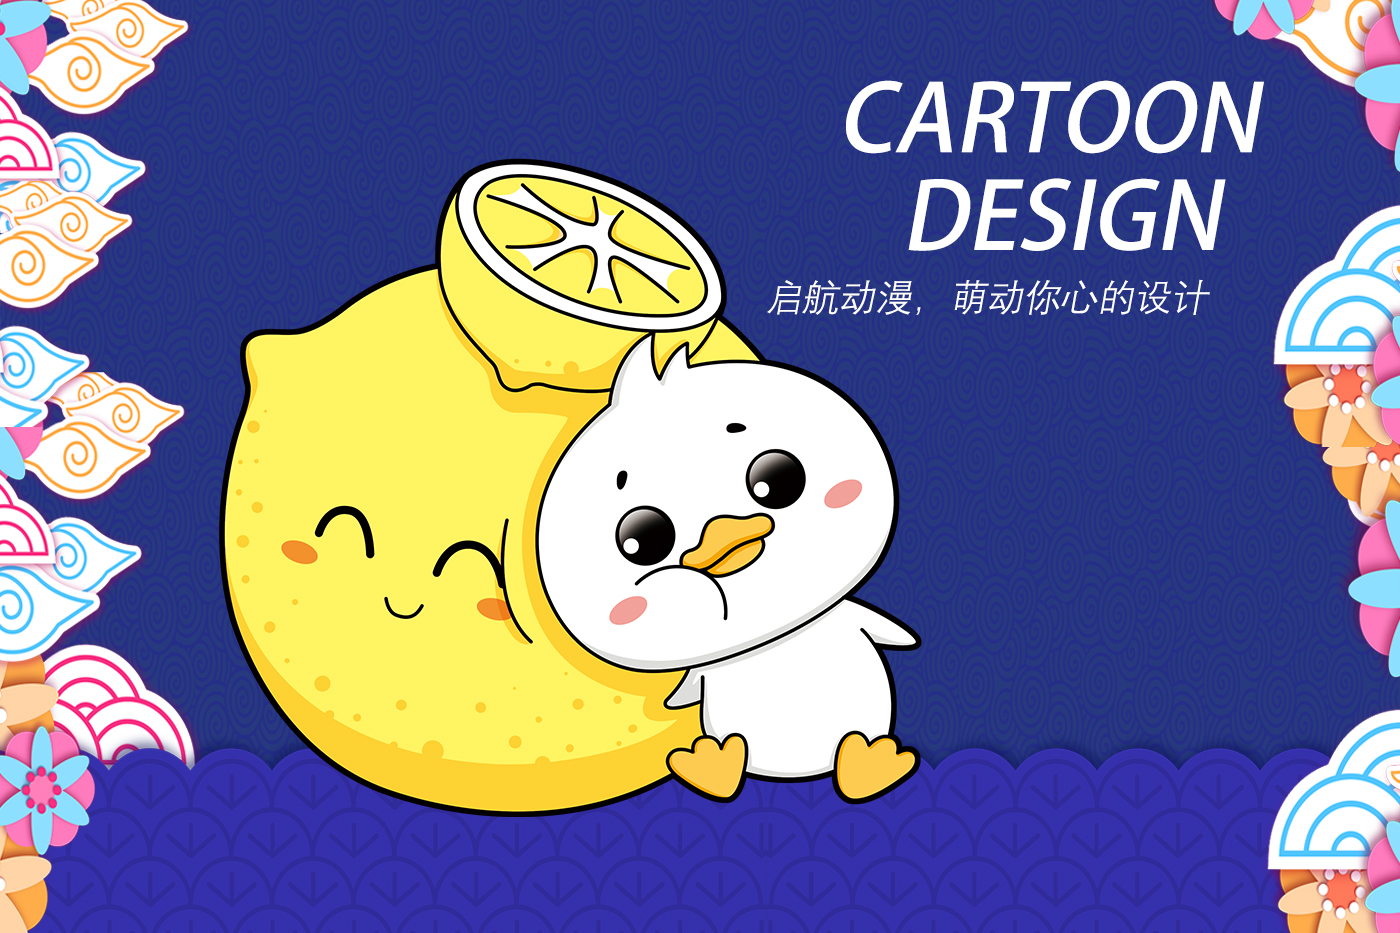 【启航】卡通形象吉祥物宣传四格漫画插画包装微信动态表情包设计